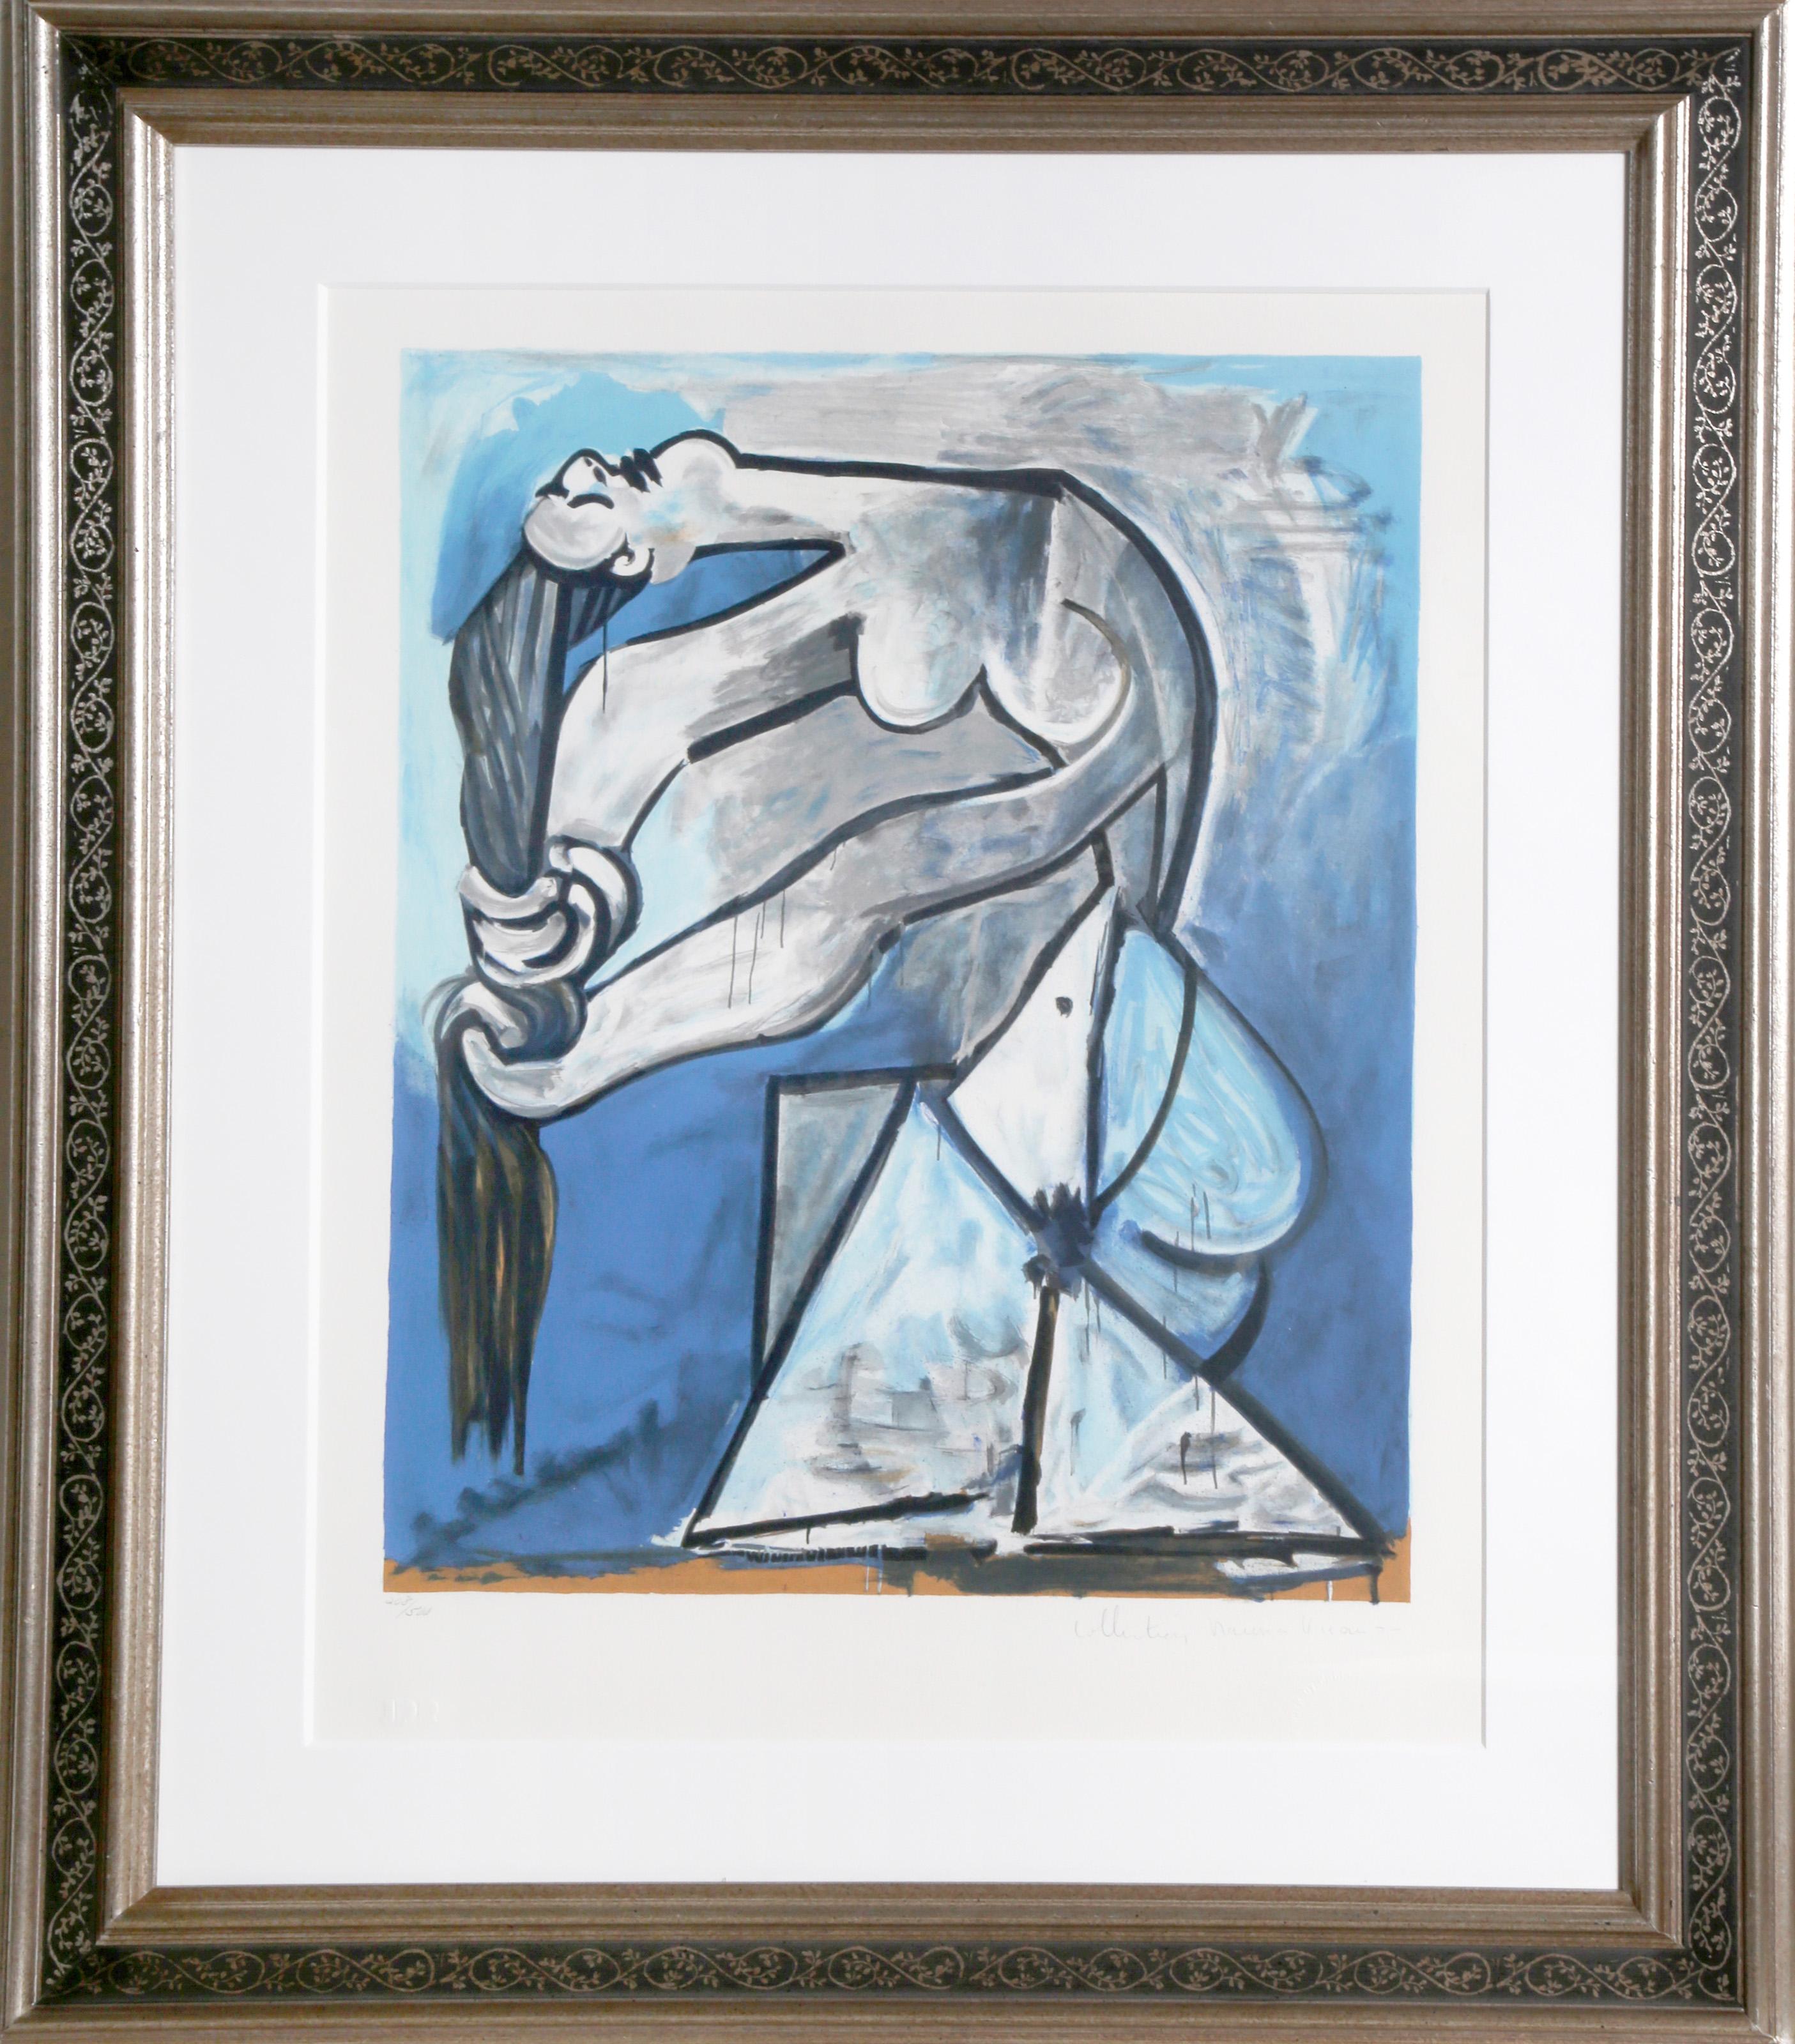 Eine Lithographie aus der Nachlasssammlung Marina Picasso nach dem Gemälde "Ne se tordant les cheveux" von Pablo Picasso.  Das Originalgemälde wurde 1952 fertiggestellt. In den 1970er Jahren, nach Picassos Tod, autorisierte Marina Picasso, seine